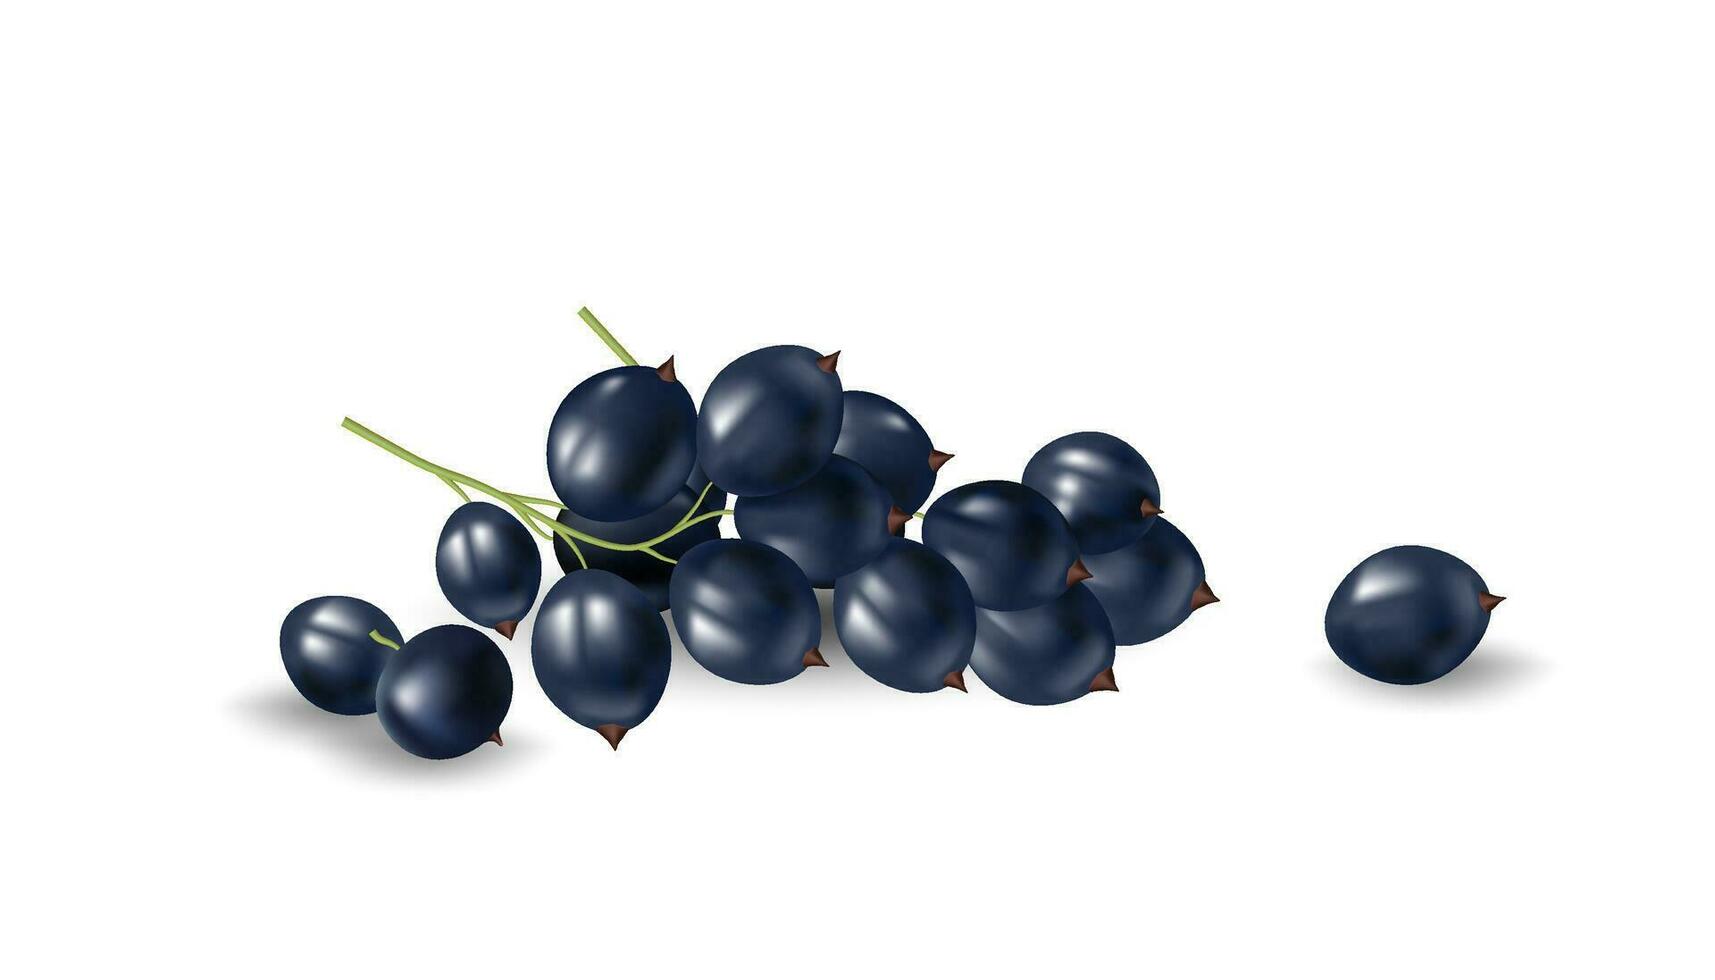 3d vector illustratie van vers en rijp zwarte bessen. geïsoleerd Aan een wit achtergrond, deze realistisch beeld is perfect voor ontwerpen verwant naar landbouw, natuur, en gezond voedsel.